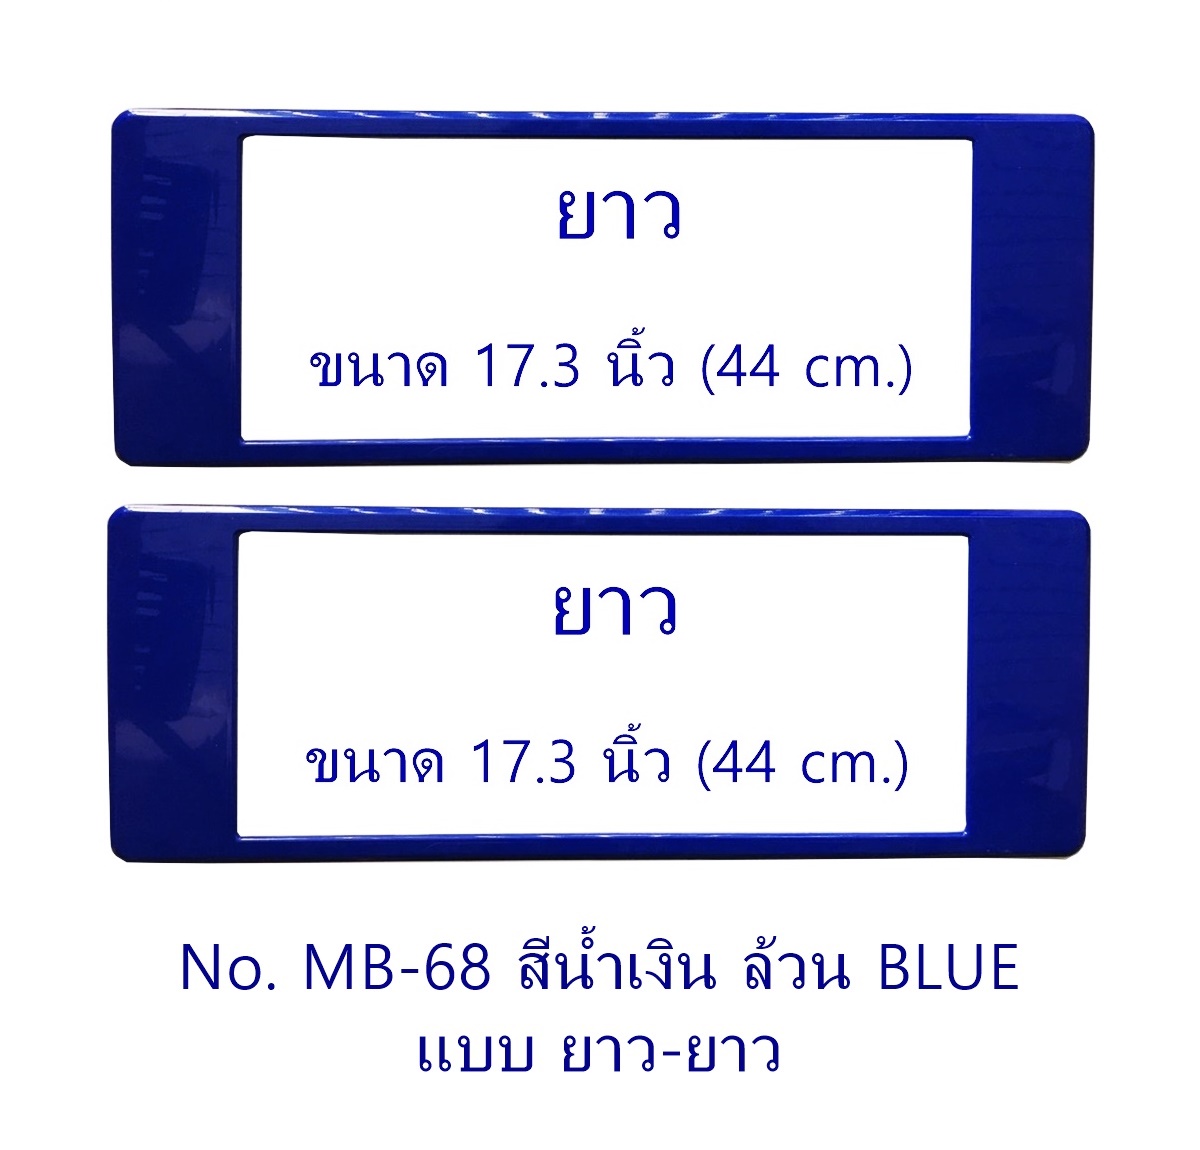 กรอบป้ายทะเบียน กันน้ำ MB-68 BLUE สีน้ำเงินล้วน แบบยาว-ยาว ระบบคลิปล็อค 8 จุด พร้อมน็อตอะไหล่